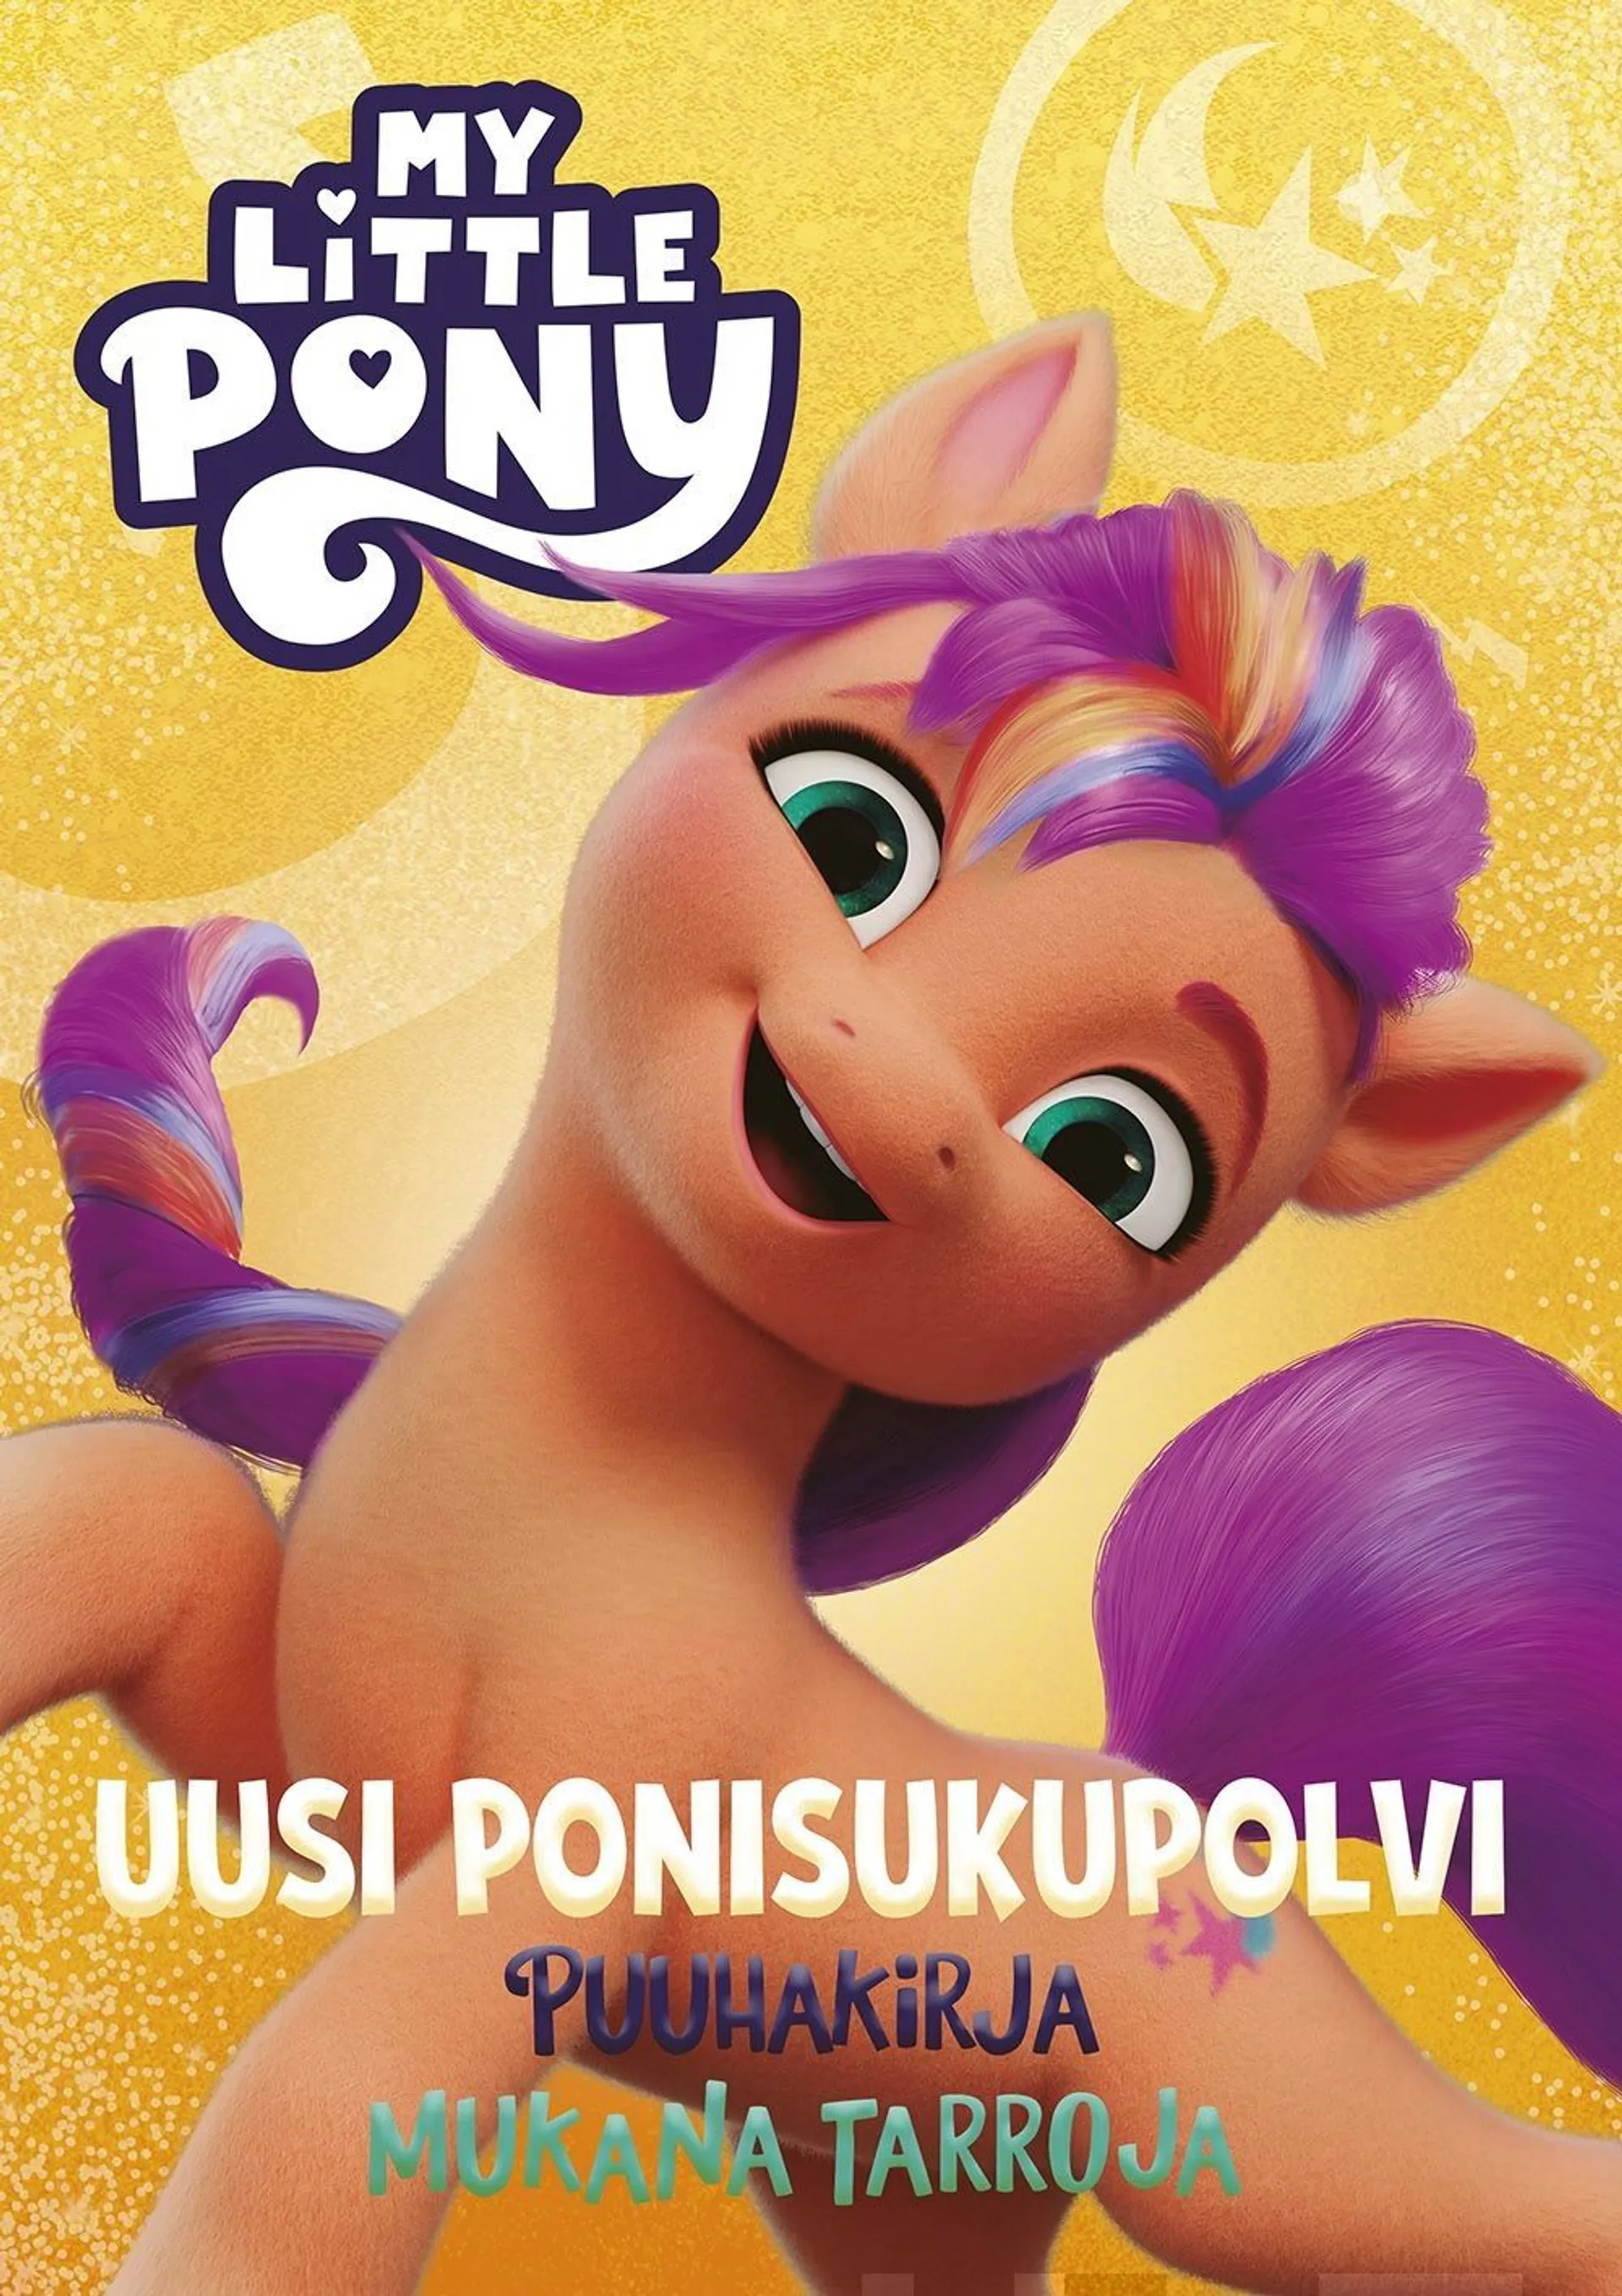 My Little Pony Uusi ponisukupolvi puuhakirja